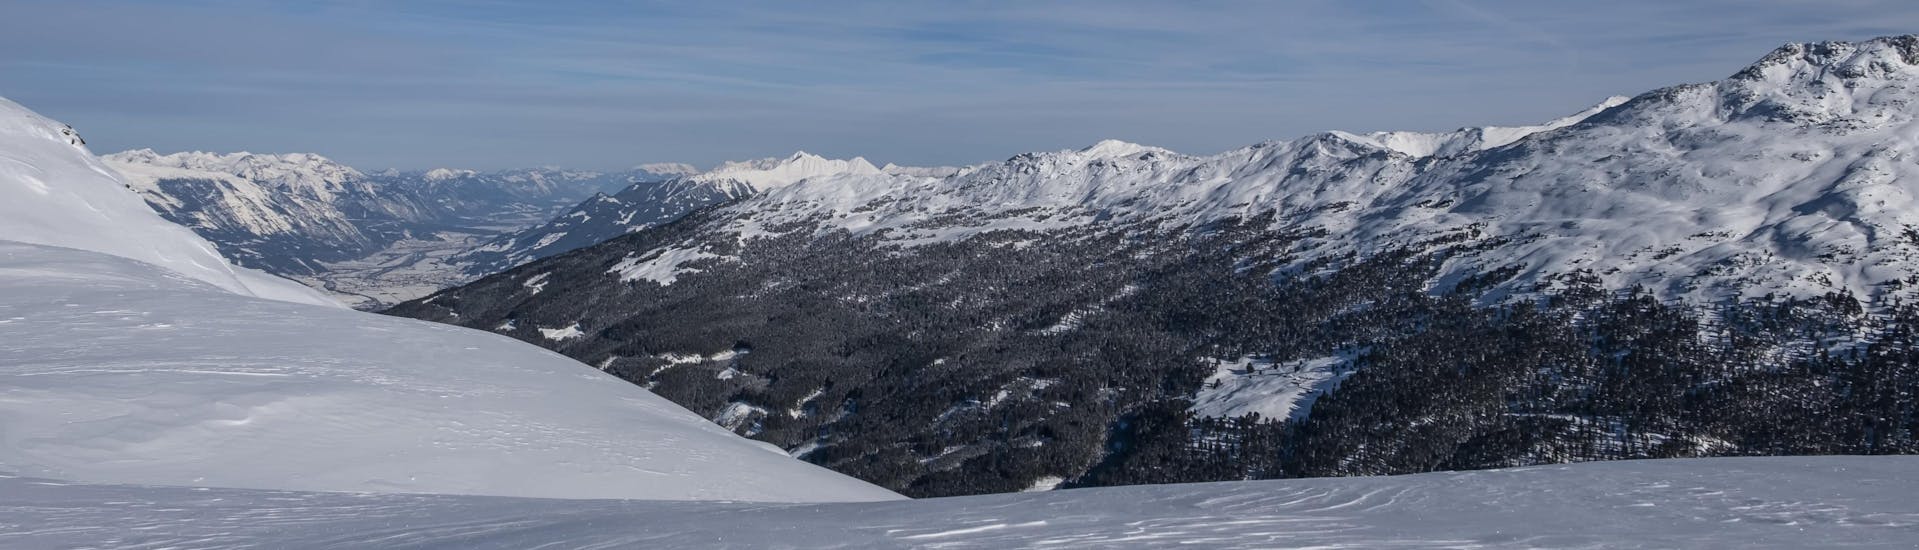 Blick auf den Gipfel des Glungezer, auf dessen Pisten die örtlichen Skischulen ihrer Skikurse durchführen.